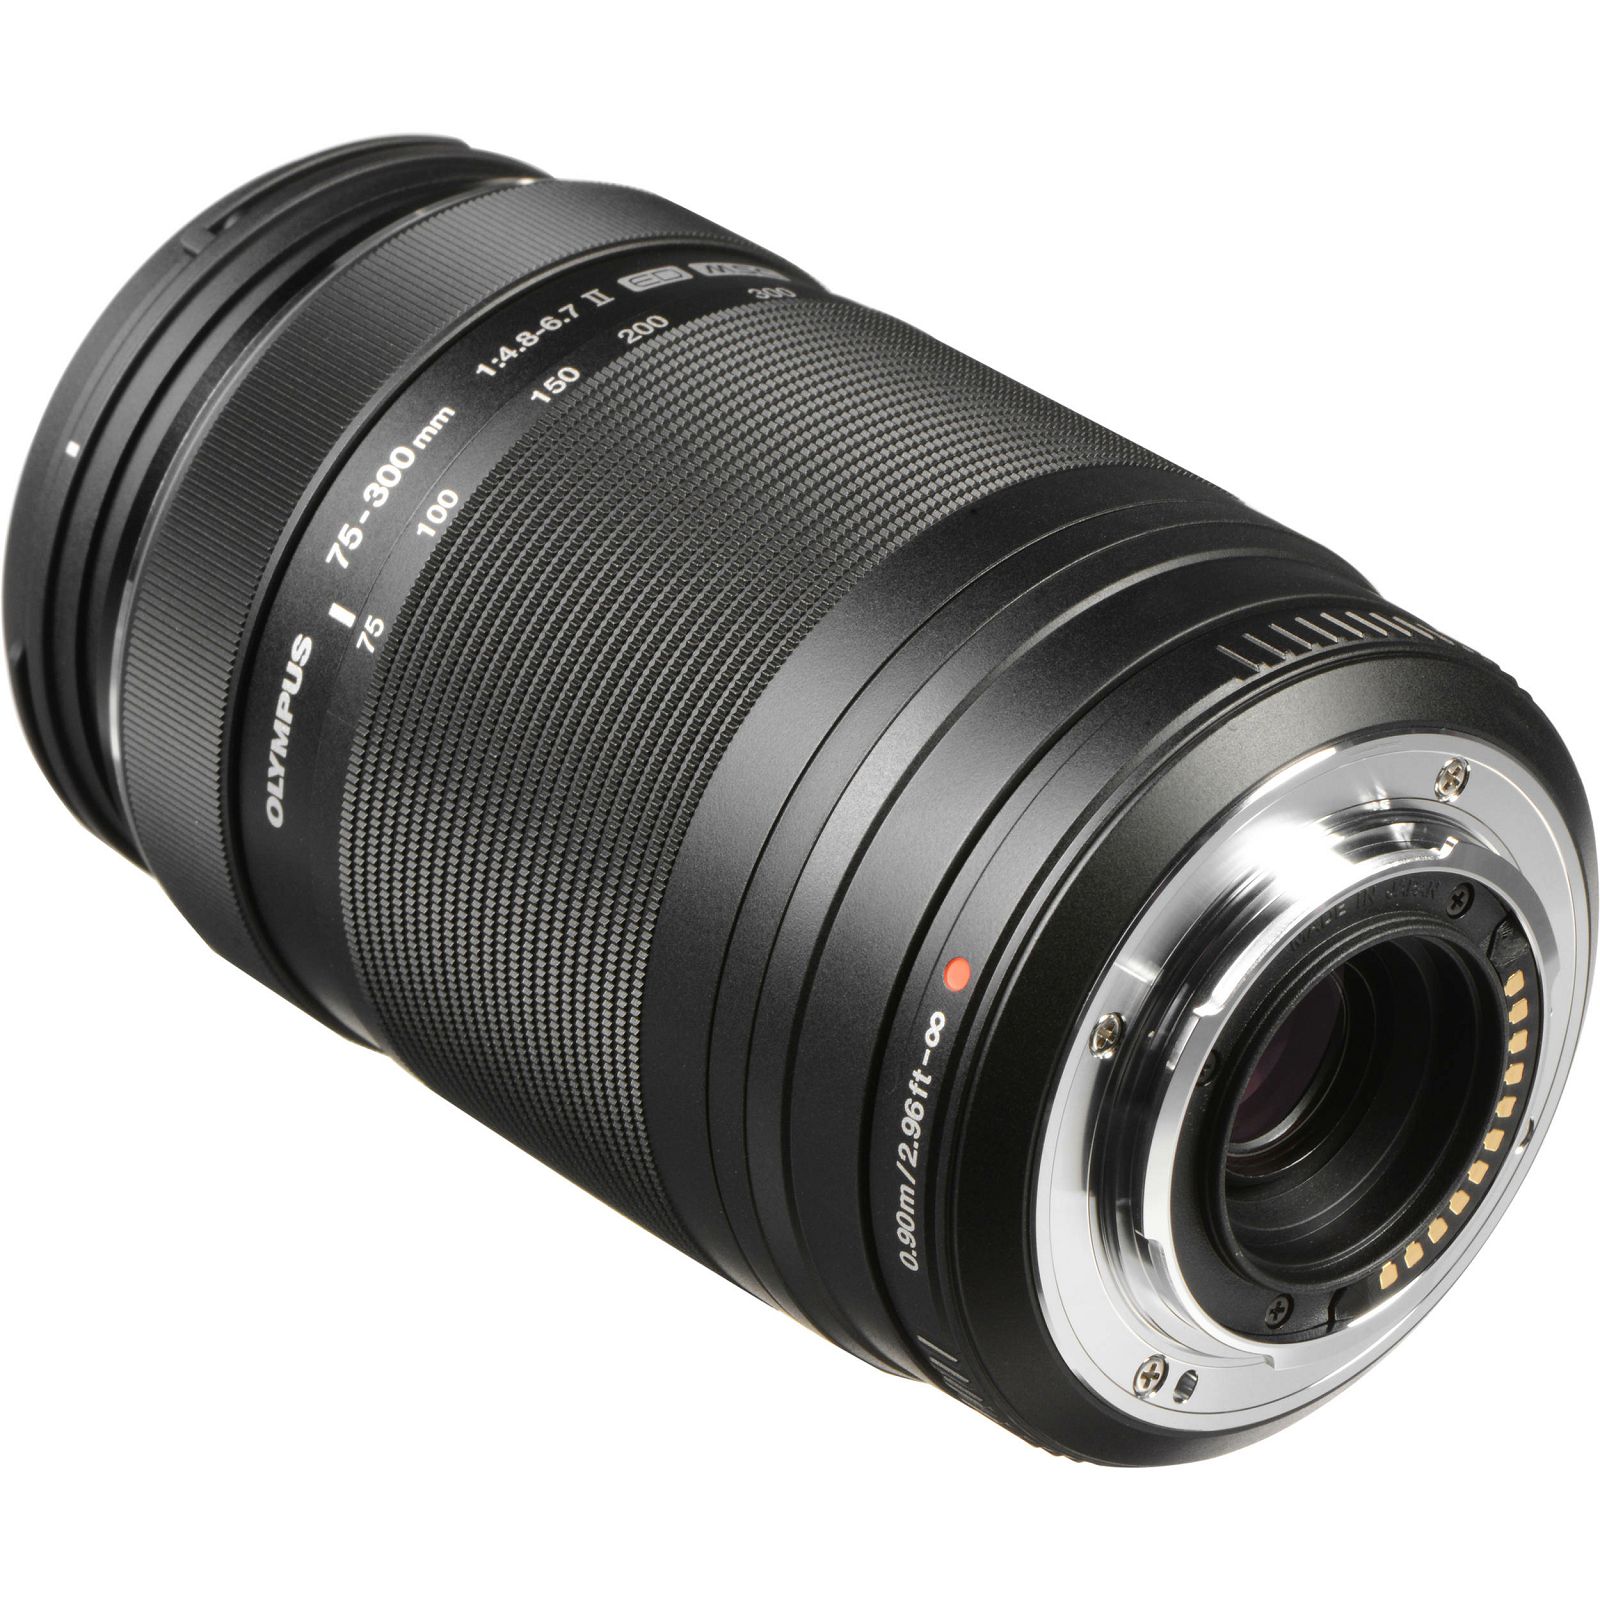 Olympus M. Zuiko Digital 75-300mm f/4.8-6.7 ED II Black telefoto objektiv EZ-M7530-2 75-300 1:4.8-6.7 zoom lens Micro Four Thirds MFT micro4/3" (V315040BW000)